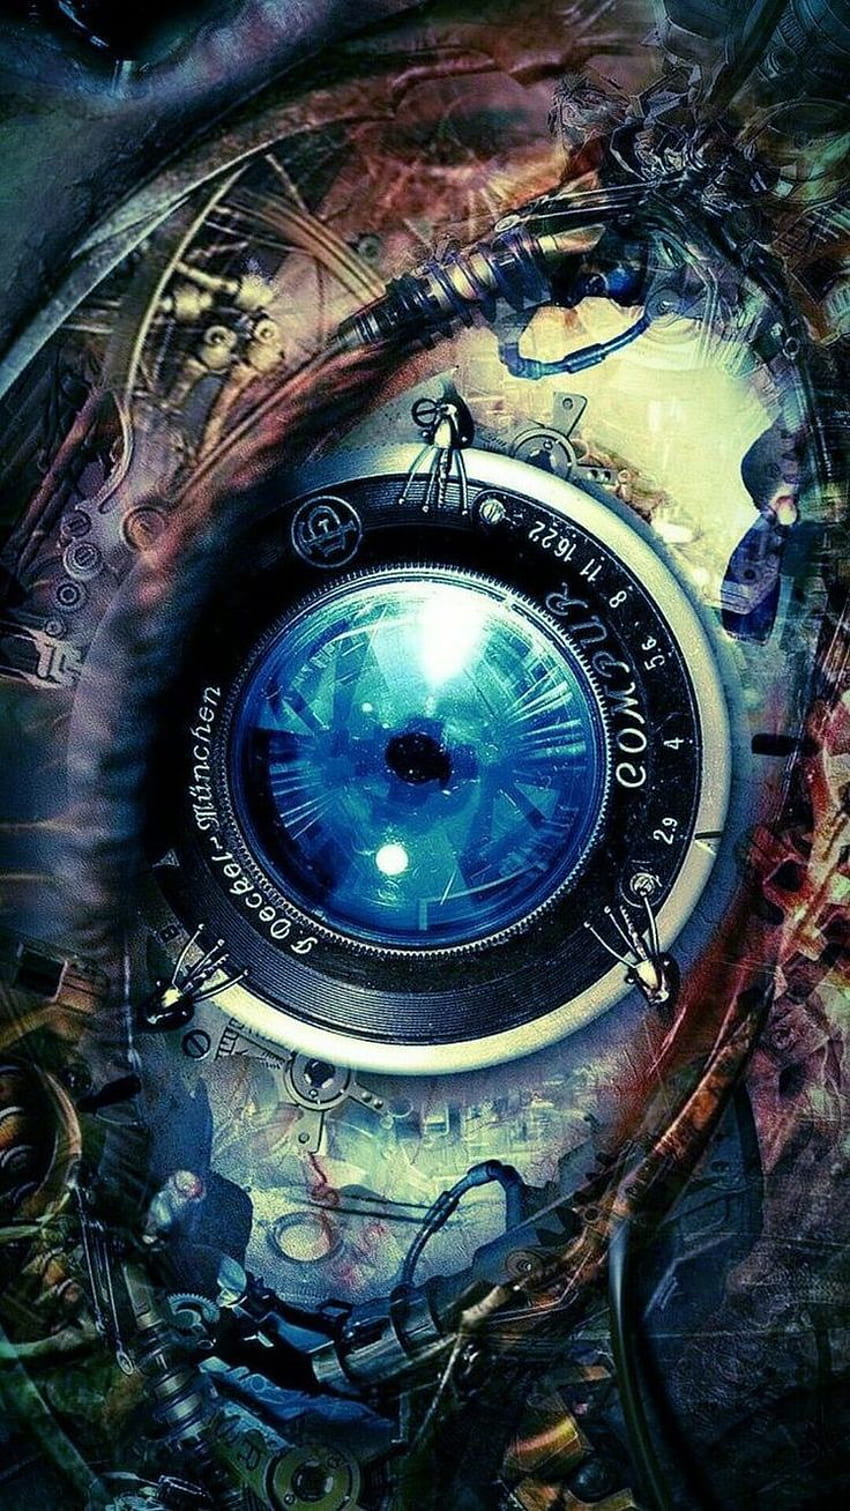 seluler, mata, organ, iris, kompas, kegelapan, Kompas Biru wallpaper ponsel HD